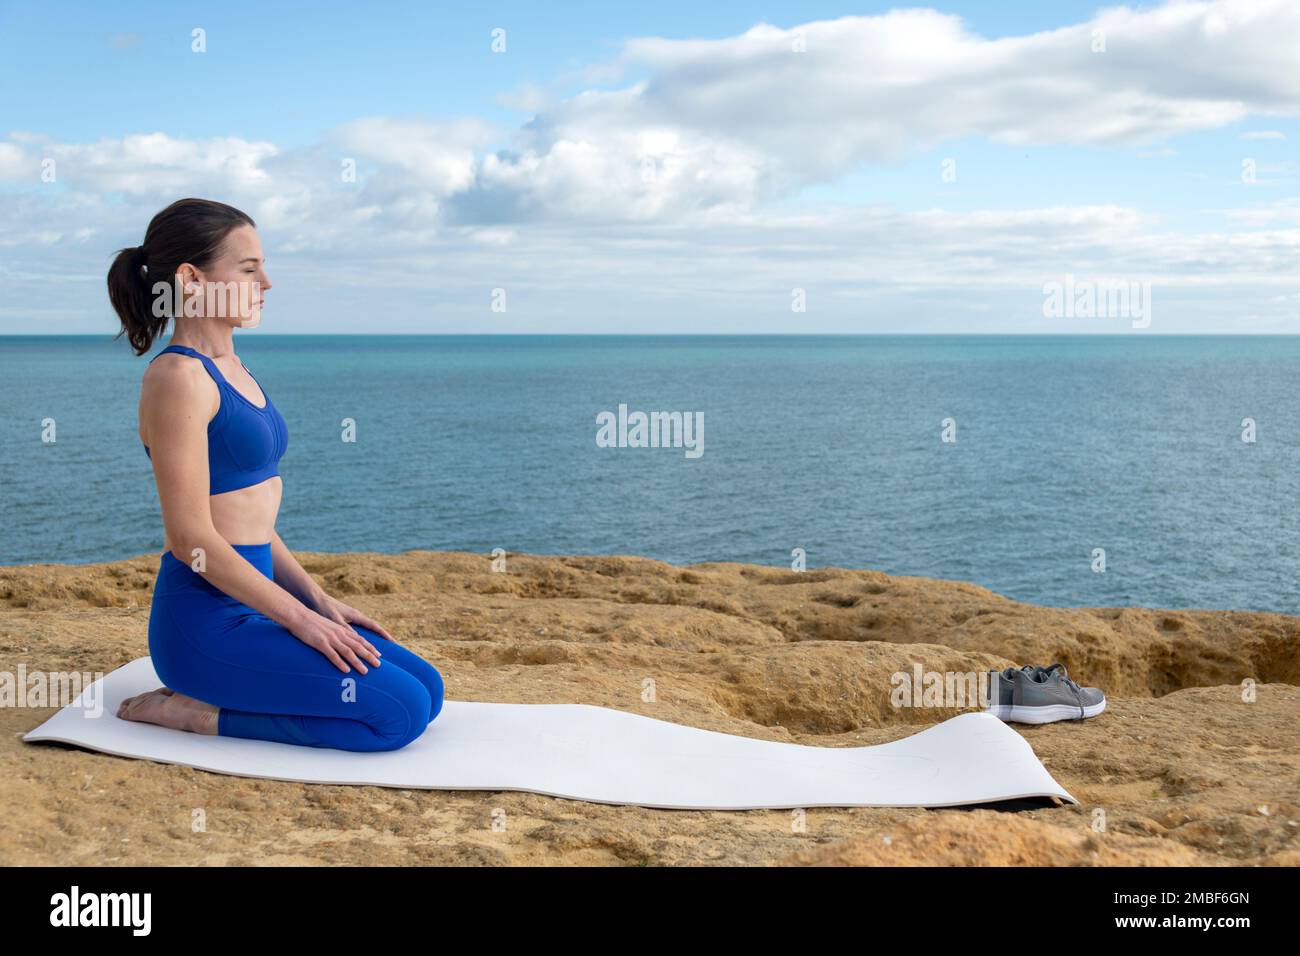 Ajuste mujer arrodillada en un yoga, estera de ejercicio junto al océano. Foto de stock